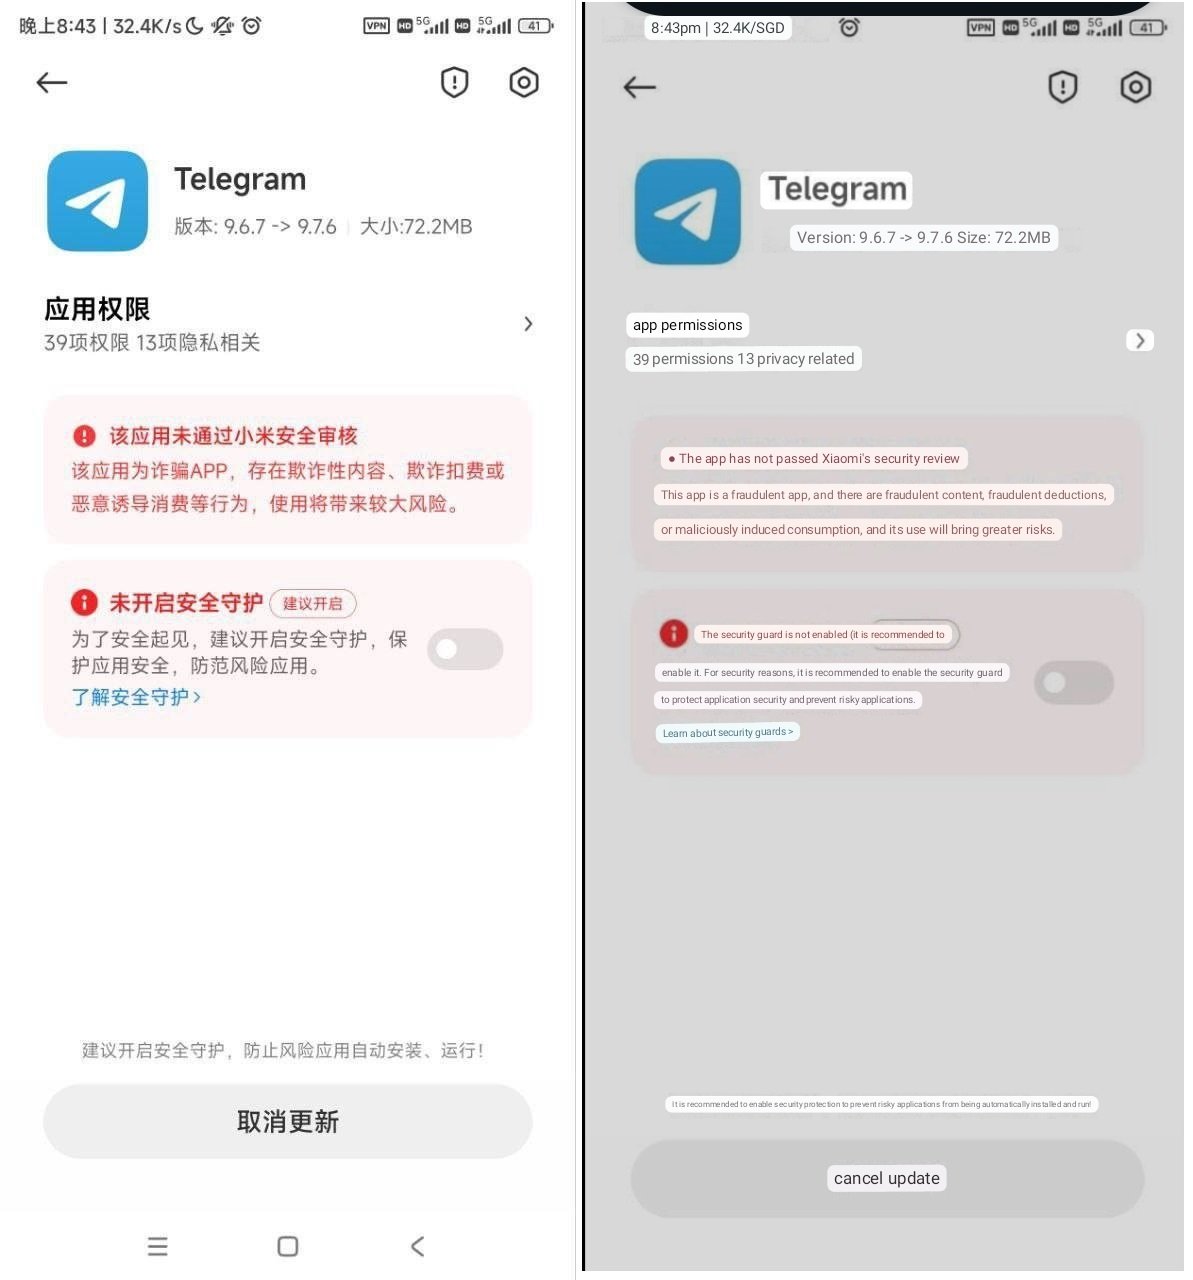 MIUI Blocking Telegram App